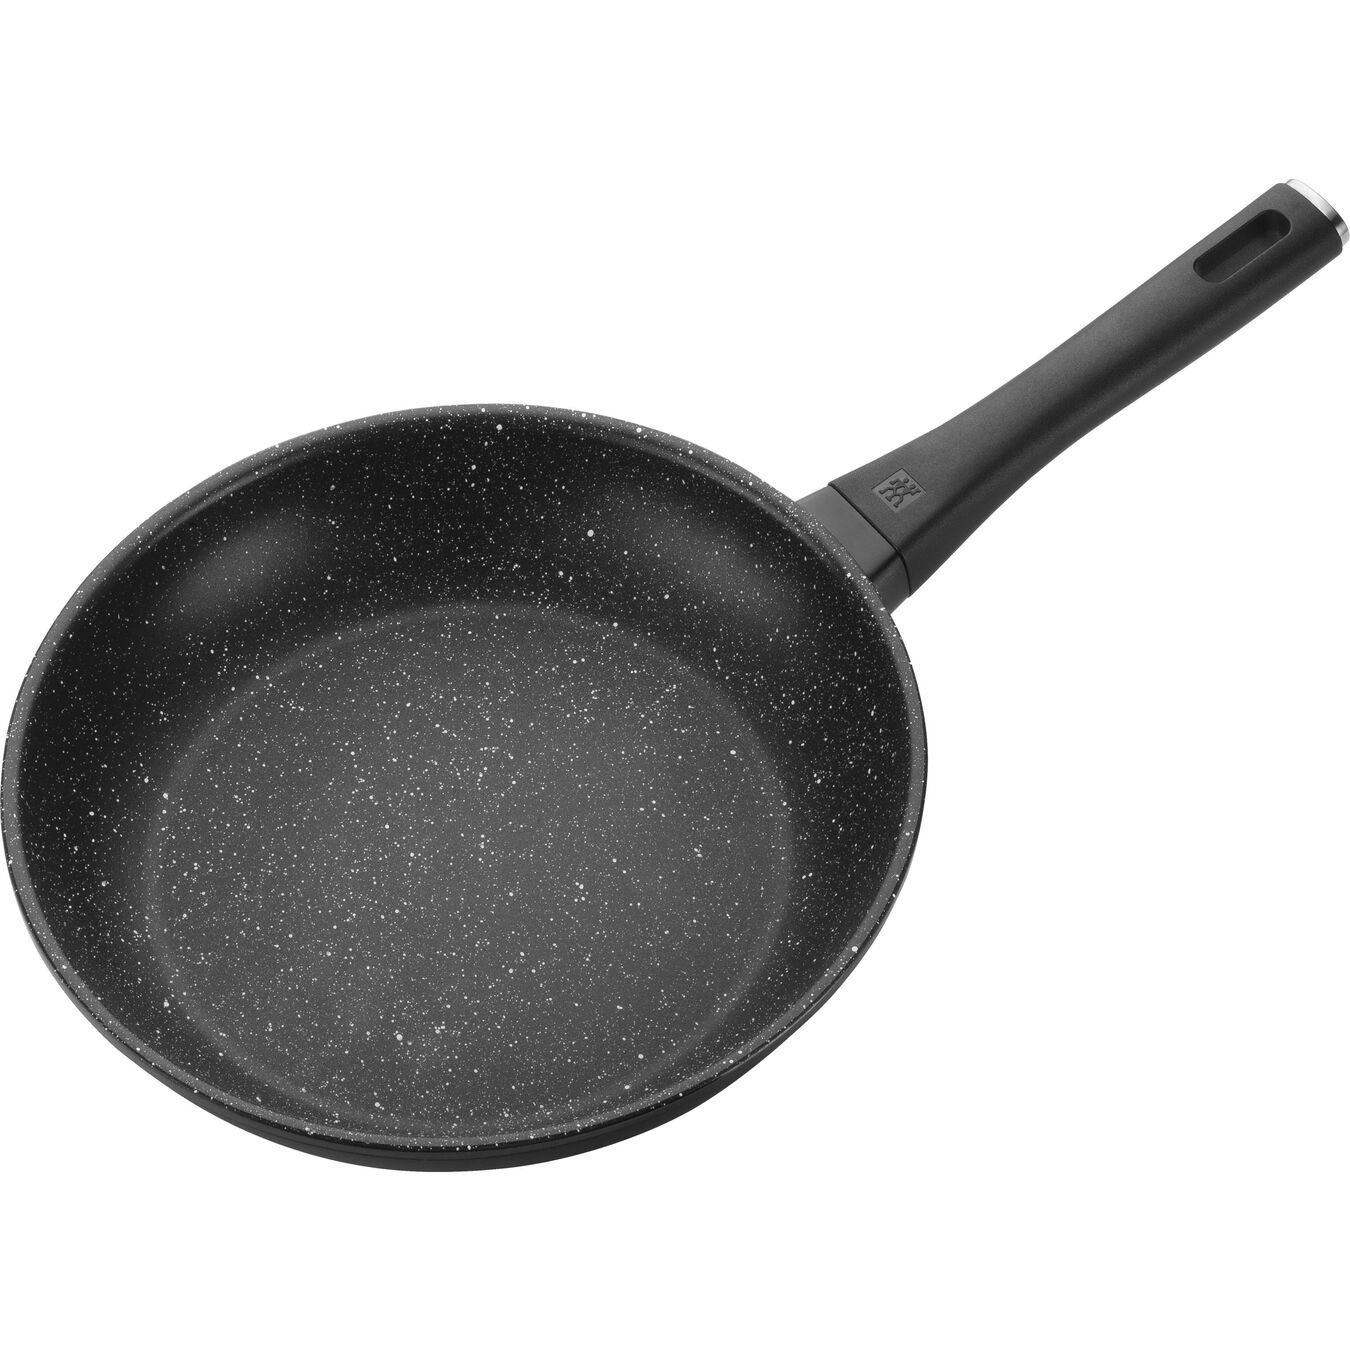 24 cm Aluminium Frying pan black,,large 4